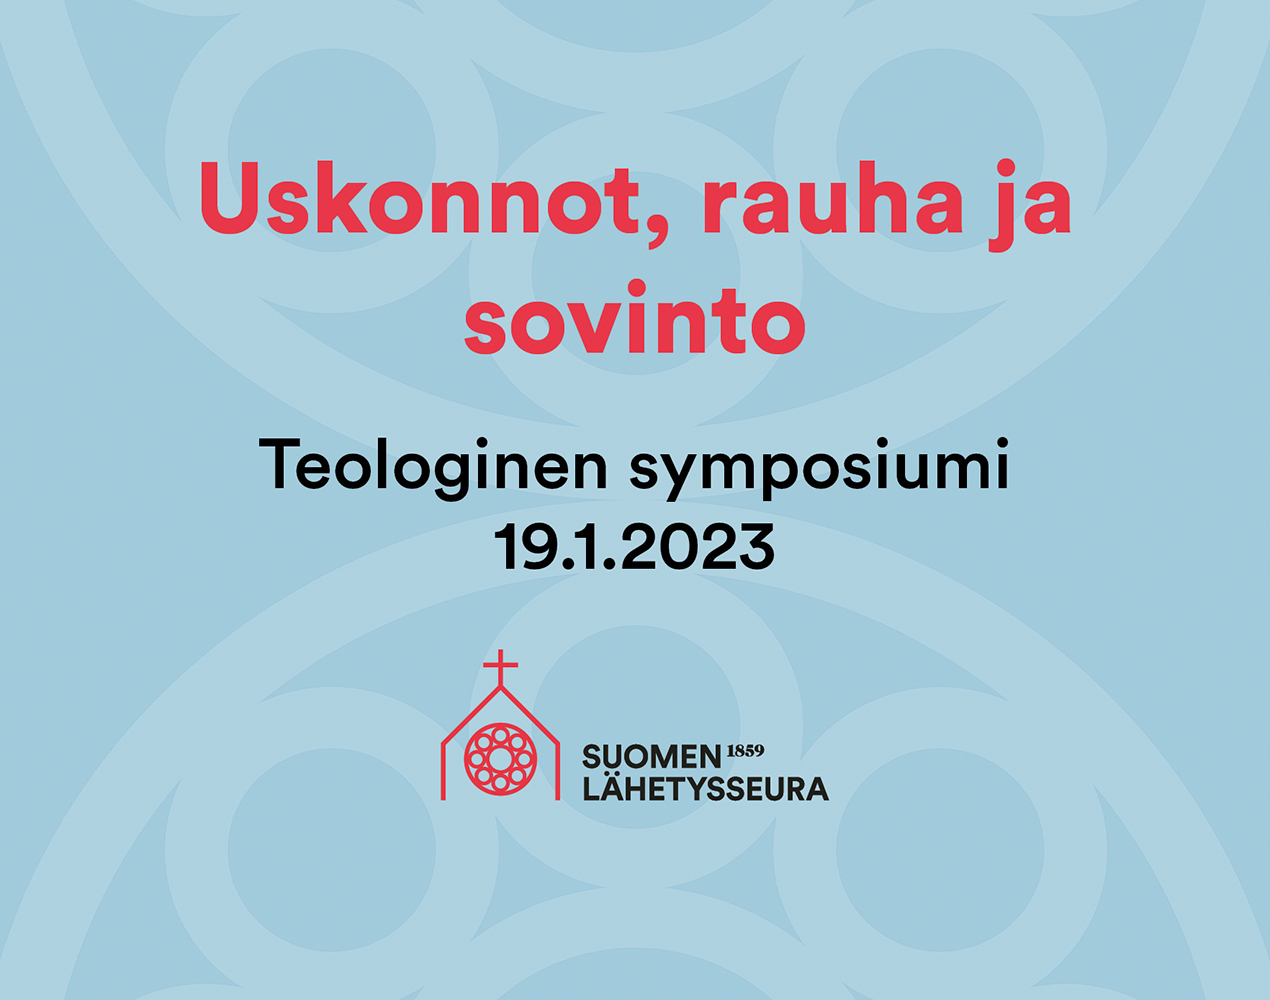 Uskonnot, rauha ja sovinto. Teologinen symposiumi 19.1.2023.